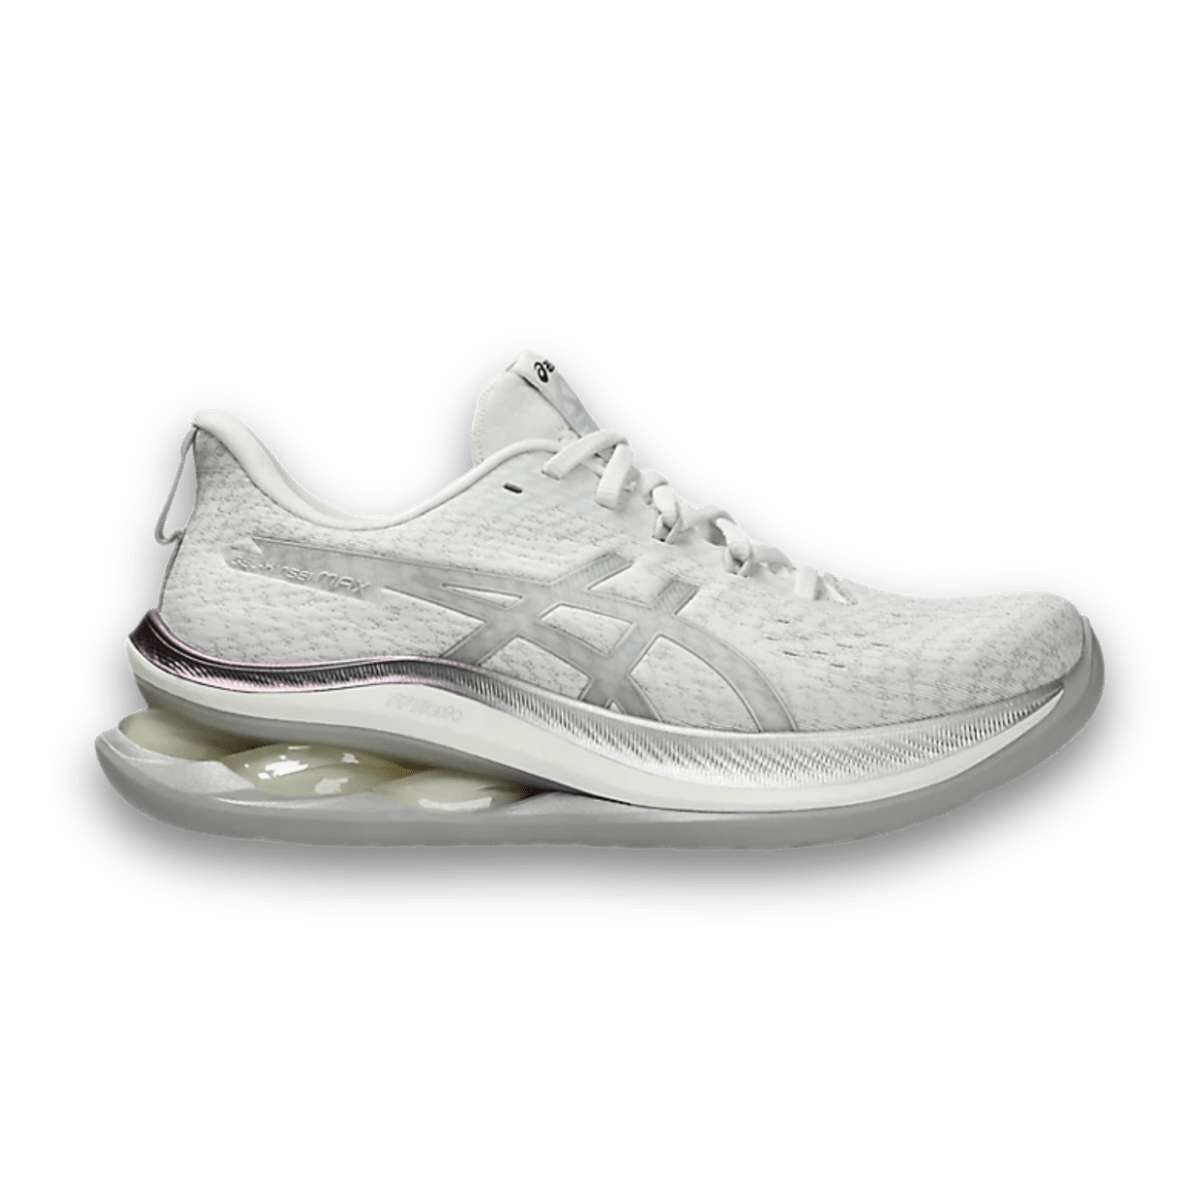 Asics Gel-Kinsei Max Platinum Pure White & Silver - Women - Low Sneaker - Jawns on Fire Sneakers & Streetwear